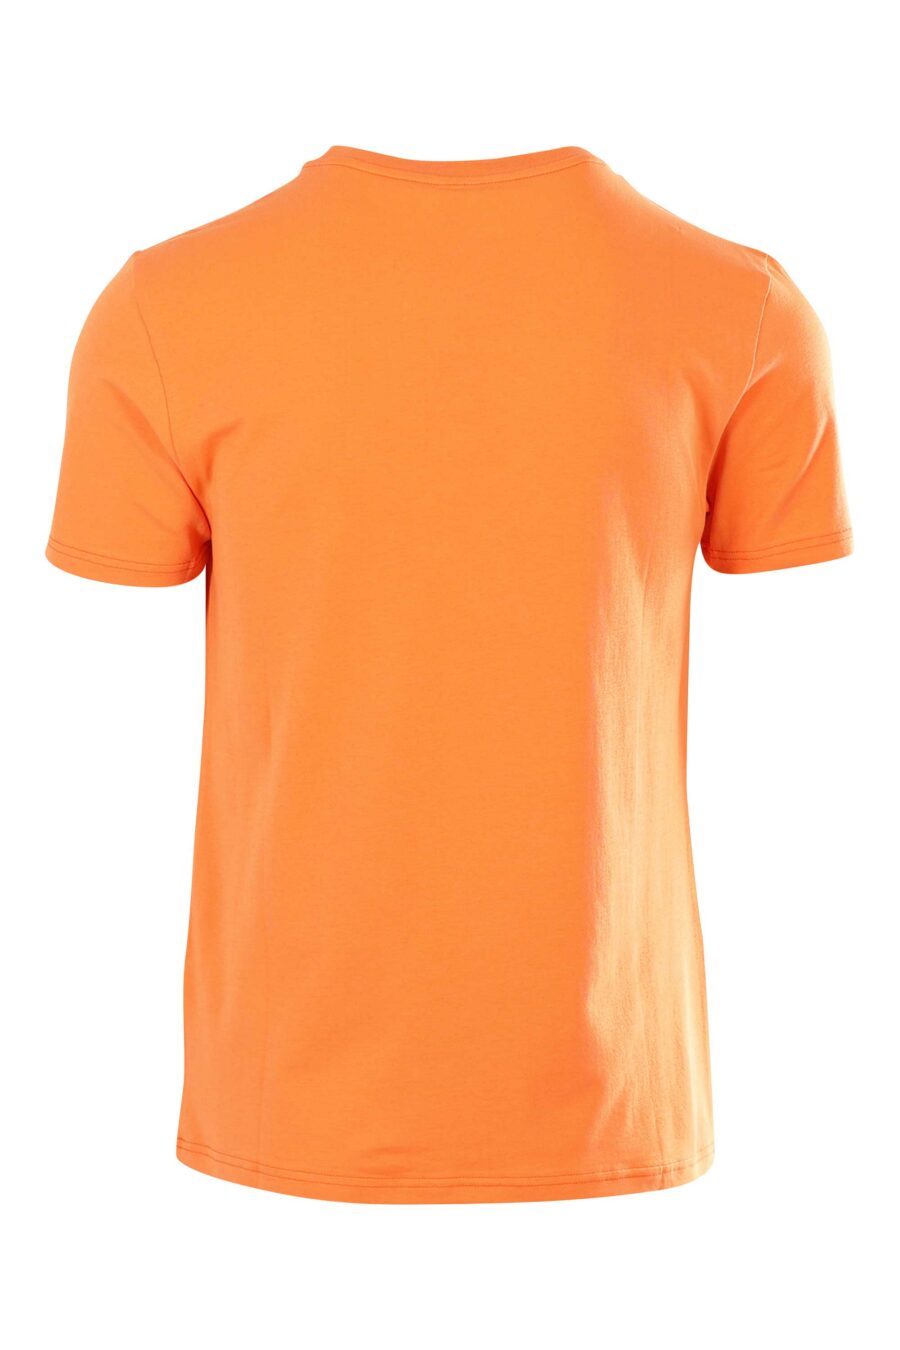 Orangefarbenes T-Shirt mit schwarzem Minilogo - 667112795752 2